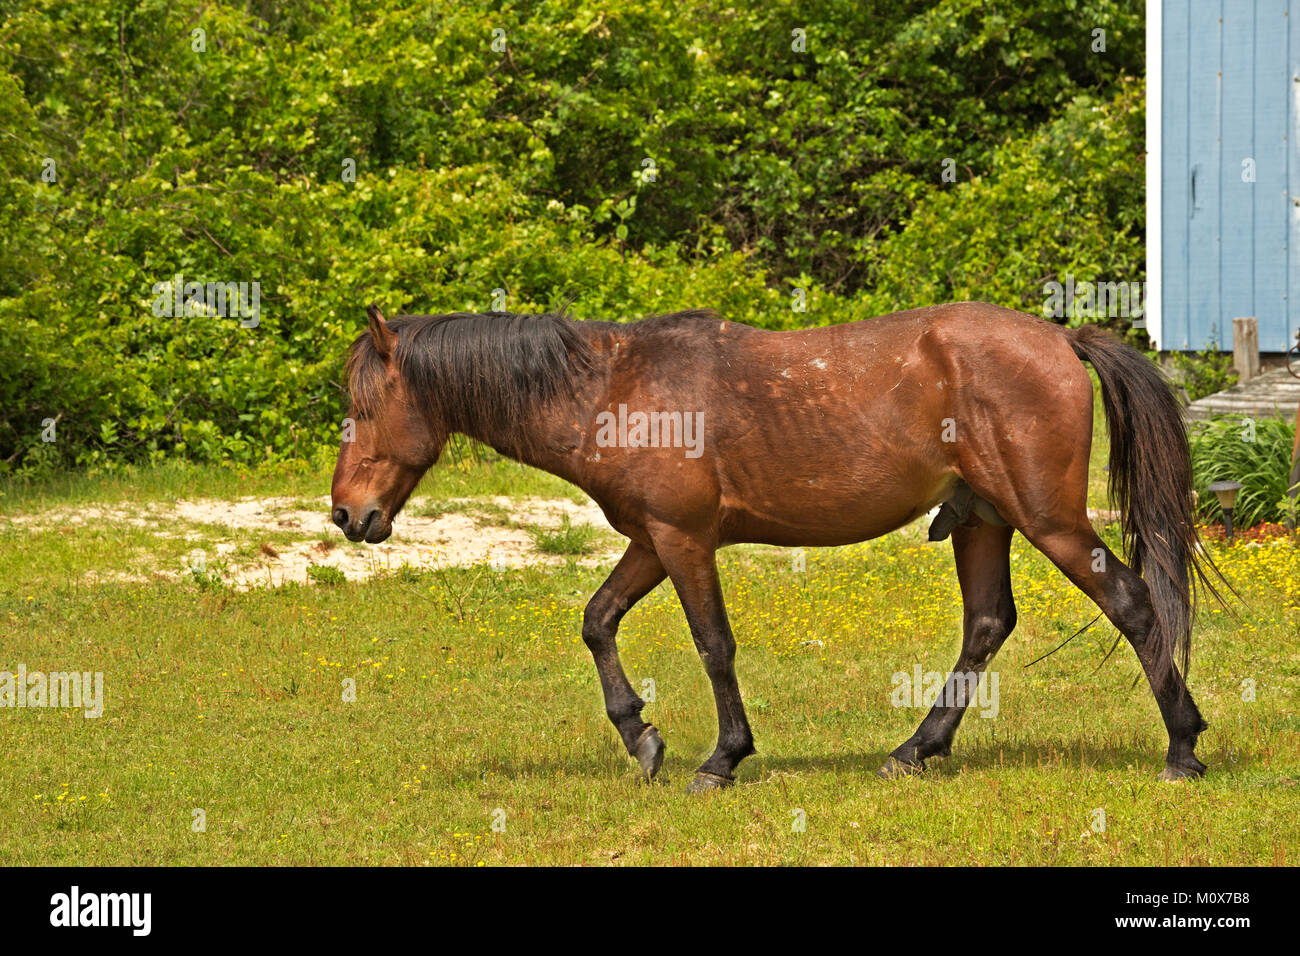 NC01415-00...CAROLINE DU NORD - L'un des semi-sauvages chevaux banquier balade au cœur d'un issolated beach side communauté sur les bancs extérieurs, au nord de Corrol Banque D'Images